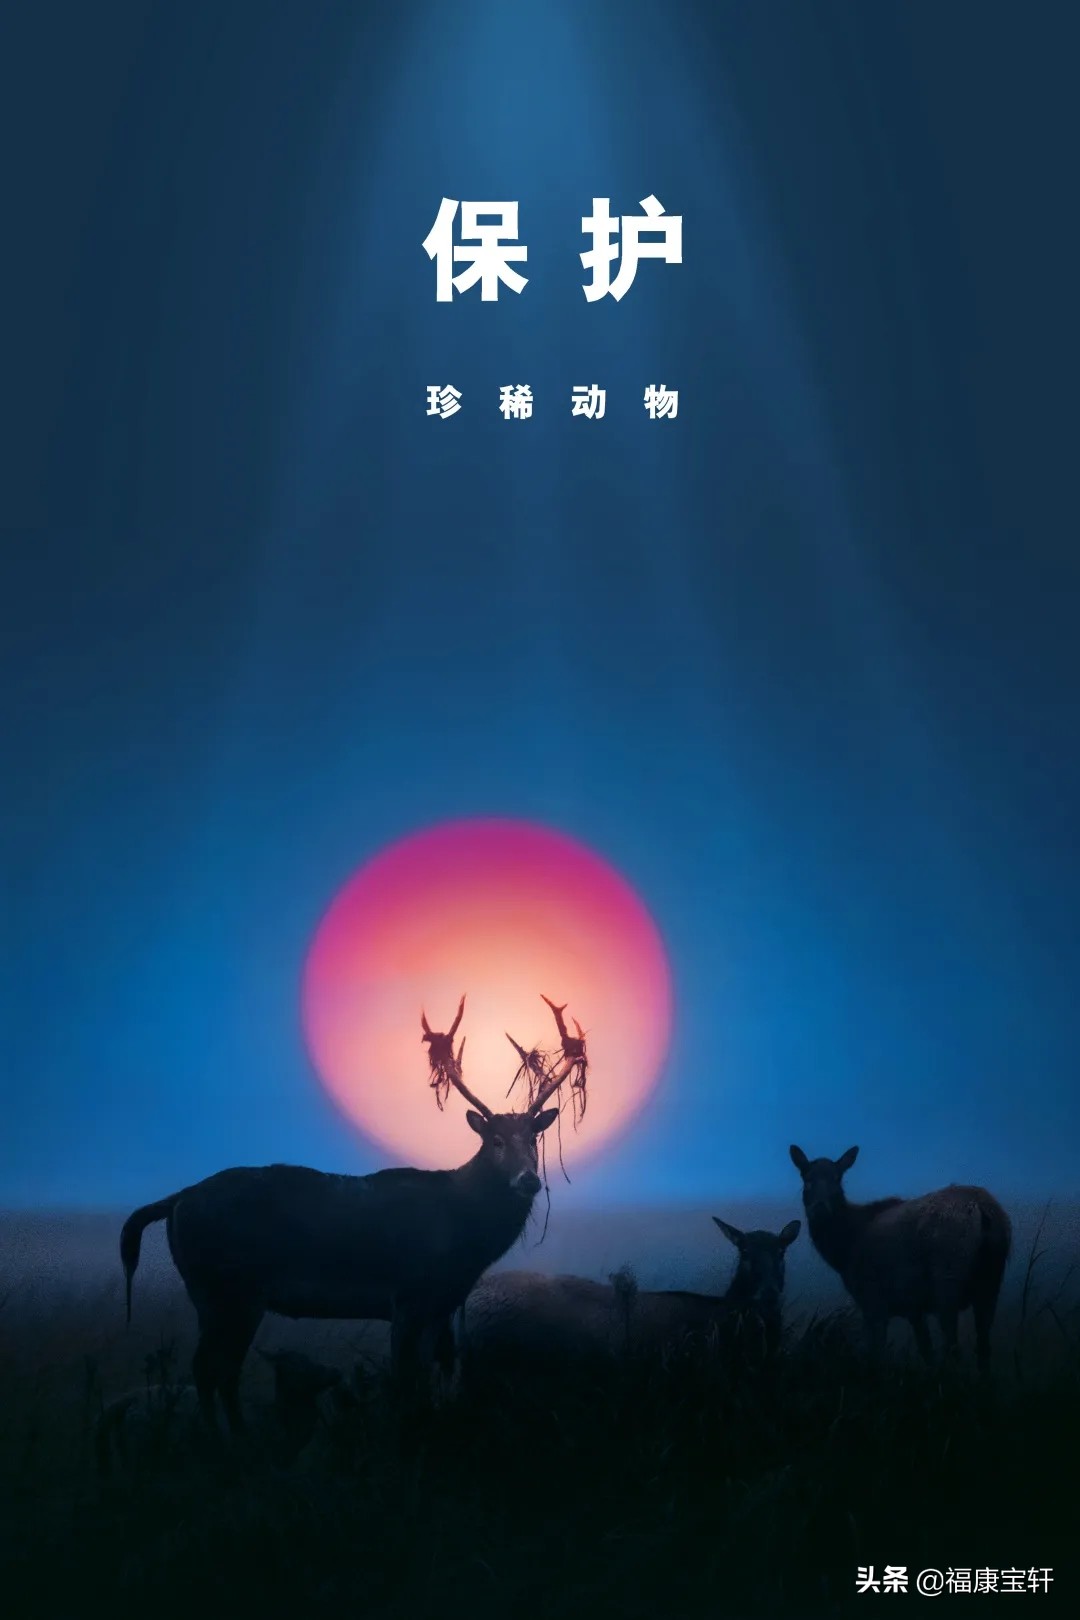 再回顾在国人心中有非凡地位的中国珍稀野生动物纪念币